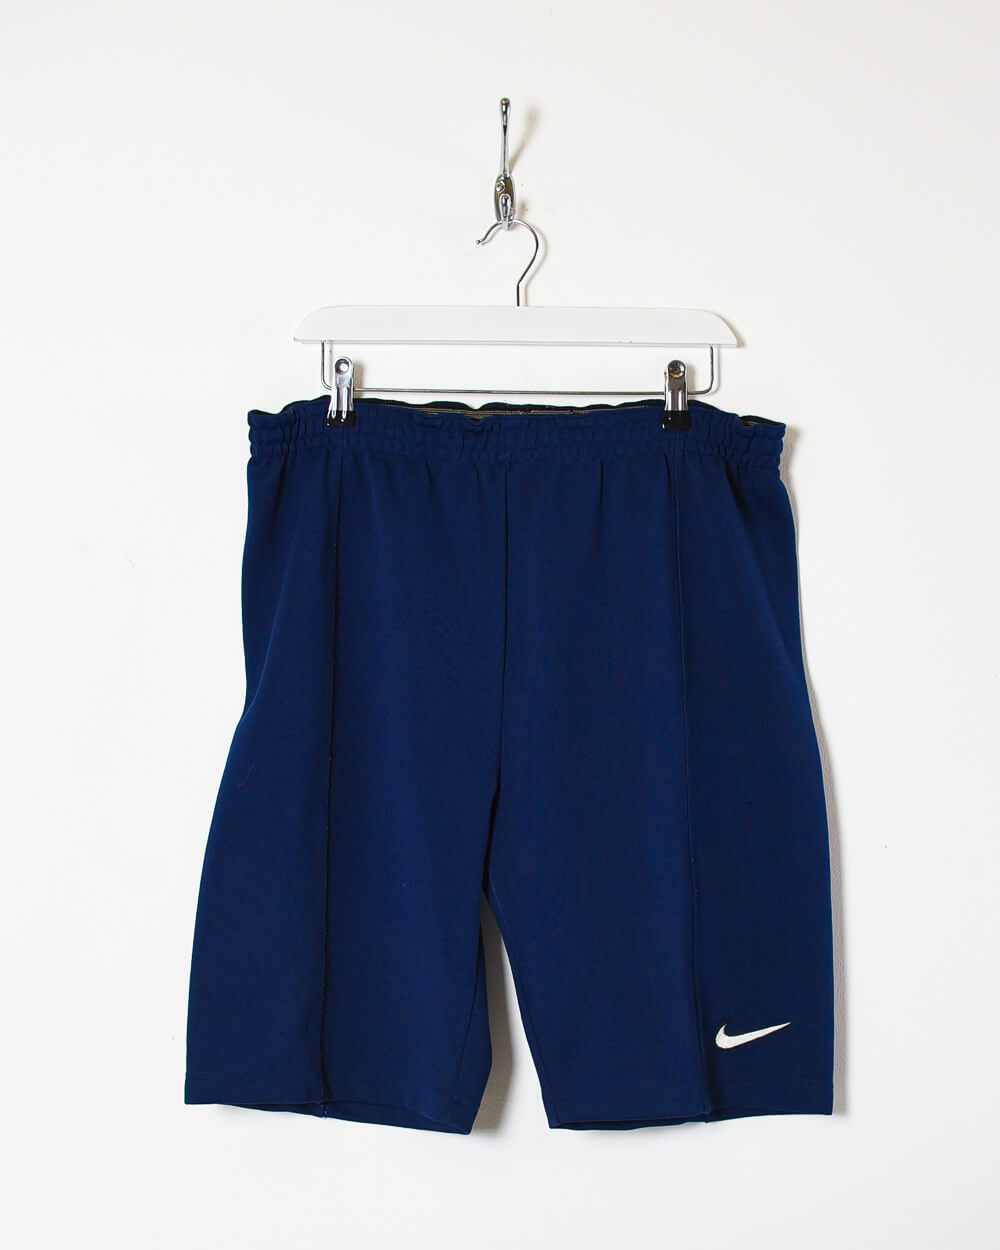 Navy Nike Shorts - W32